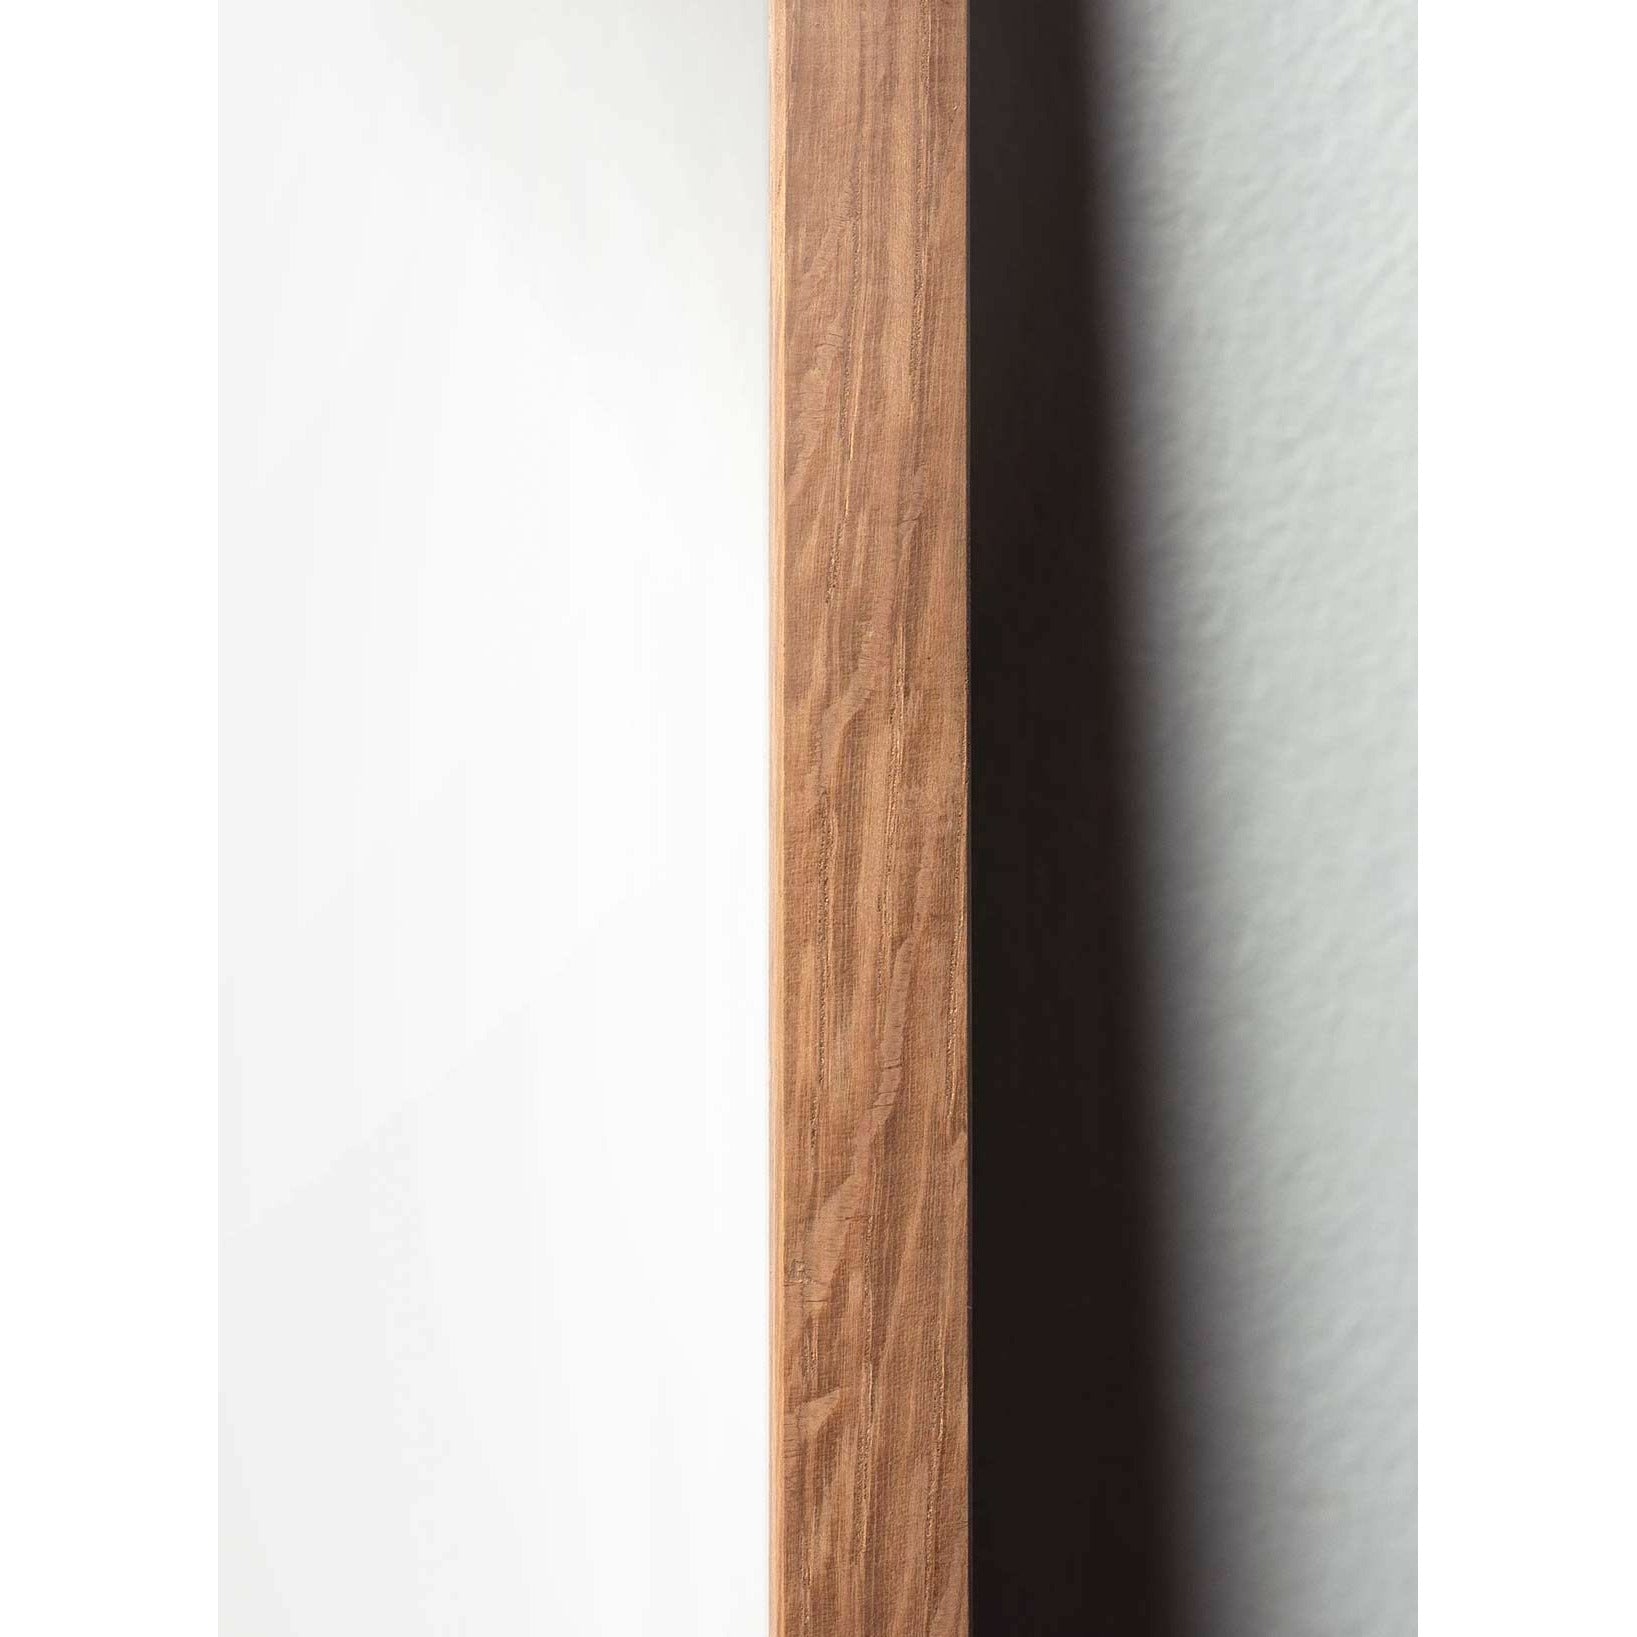 brainchild Affiche classique du cône en pin, cadre en bois clair 50x70 cm, fond de couleur sable